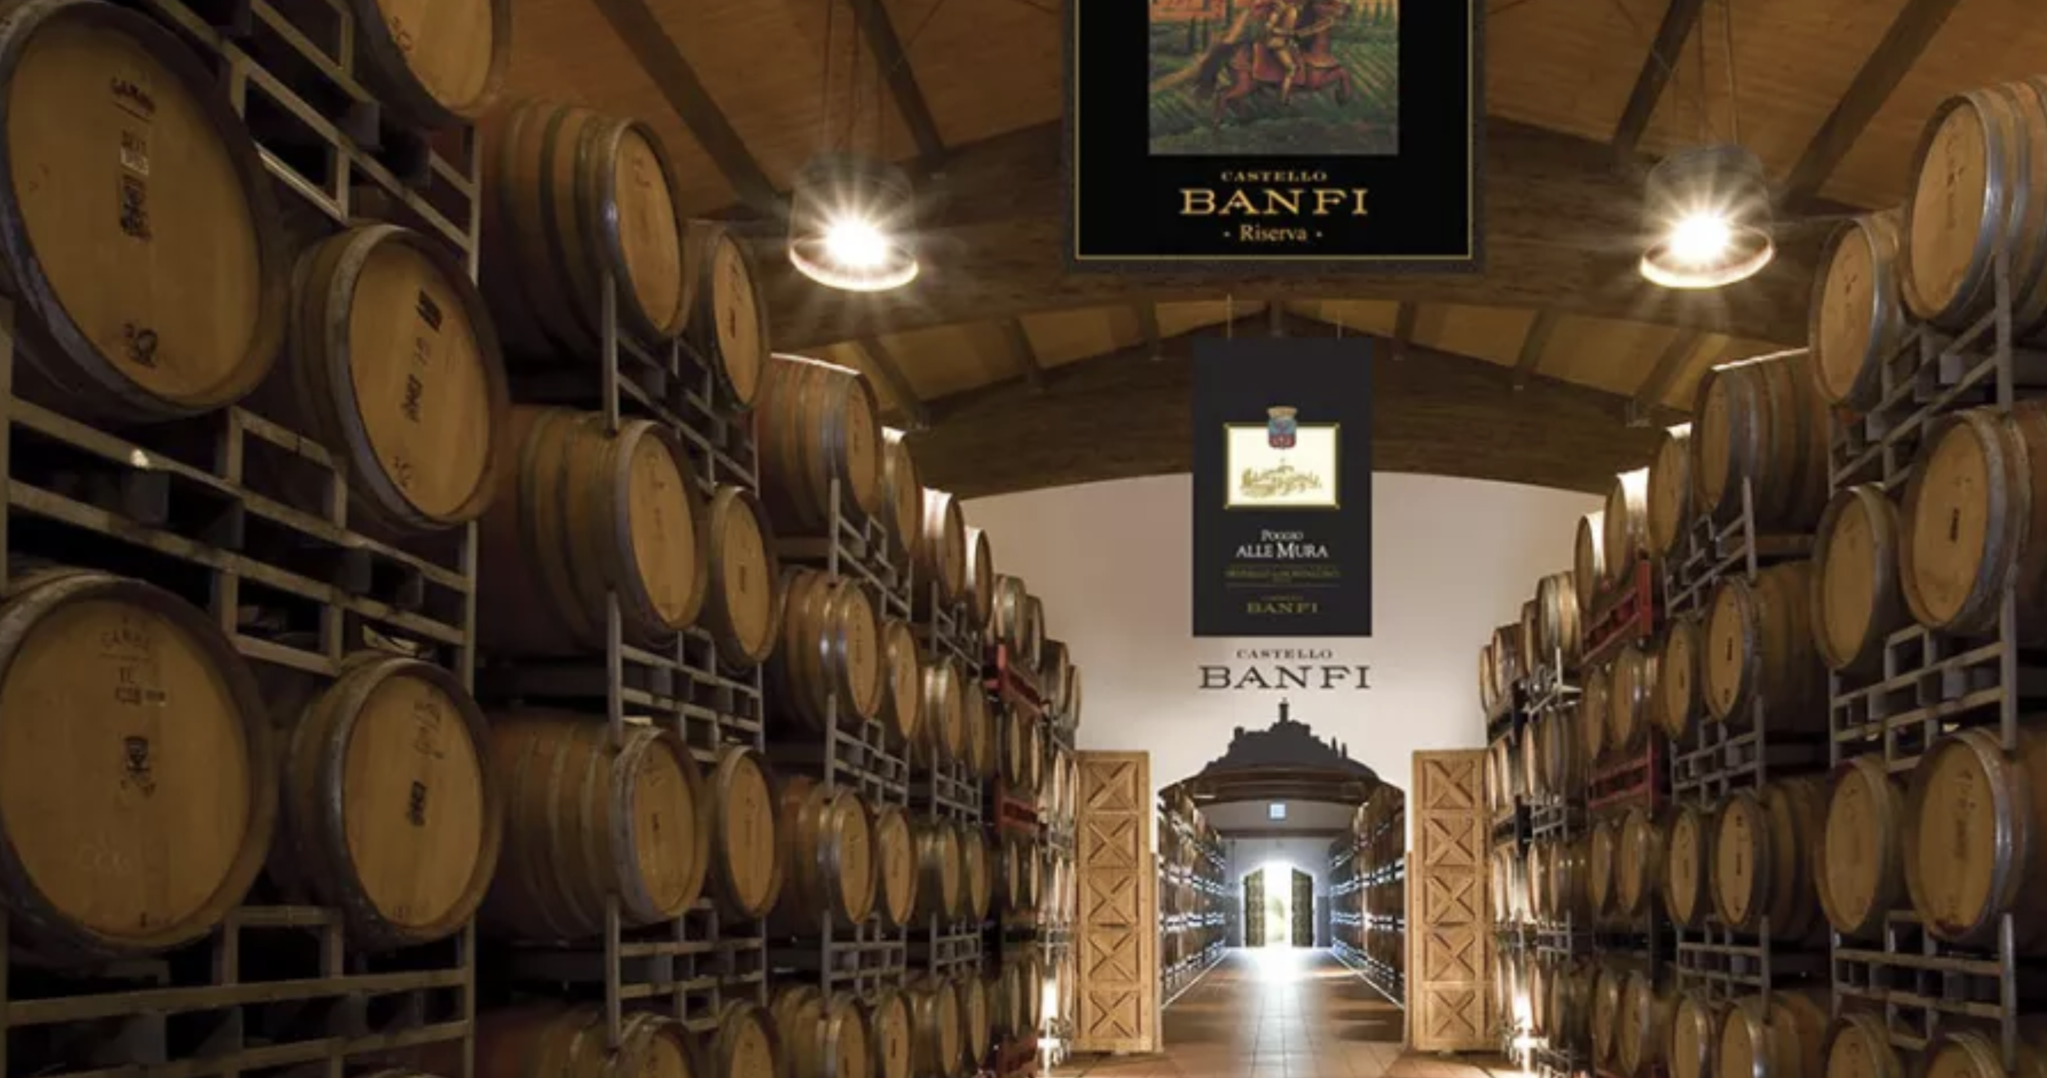 Cellar Wine Cellar Michael\'s 2018, Michael\'s Classico Banfi, Wine Chianti \